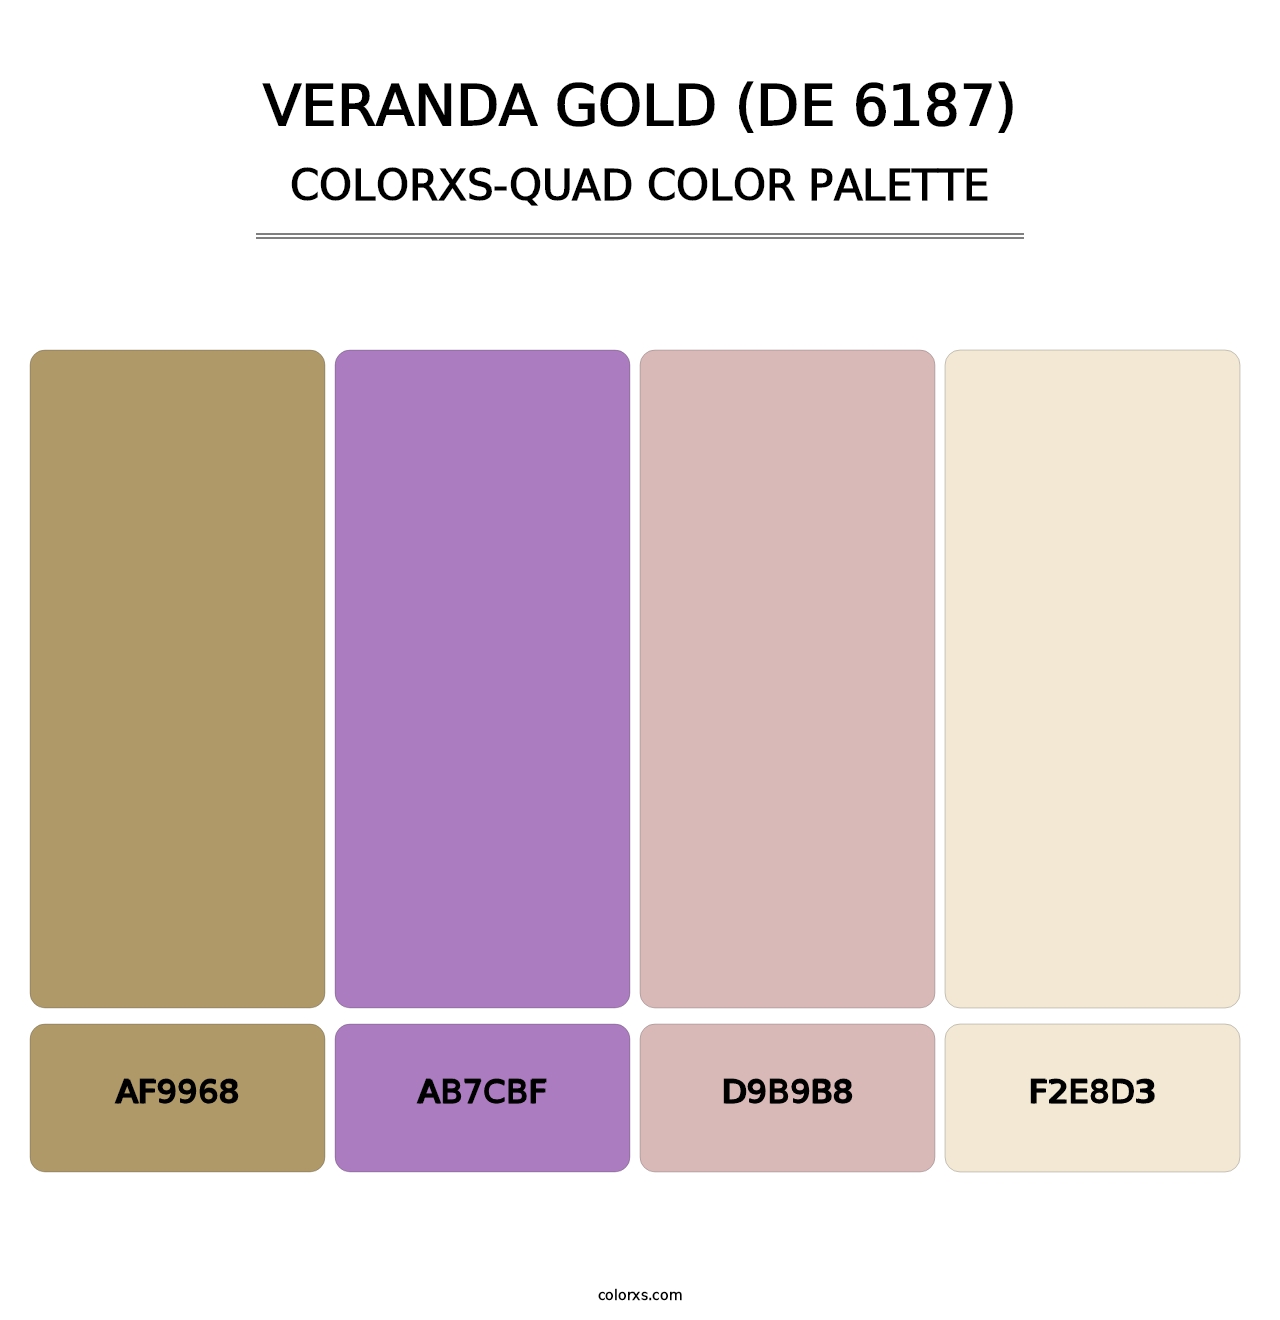 Veranda Gold (DE 6187) - Colorxs Quad Palette